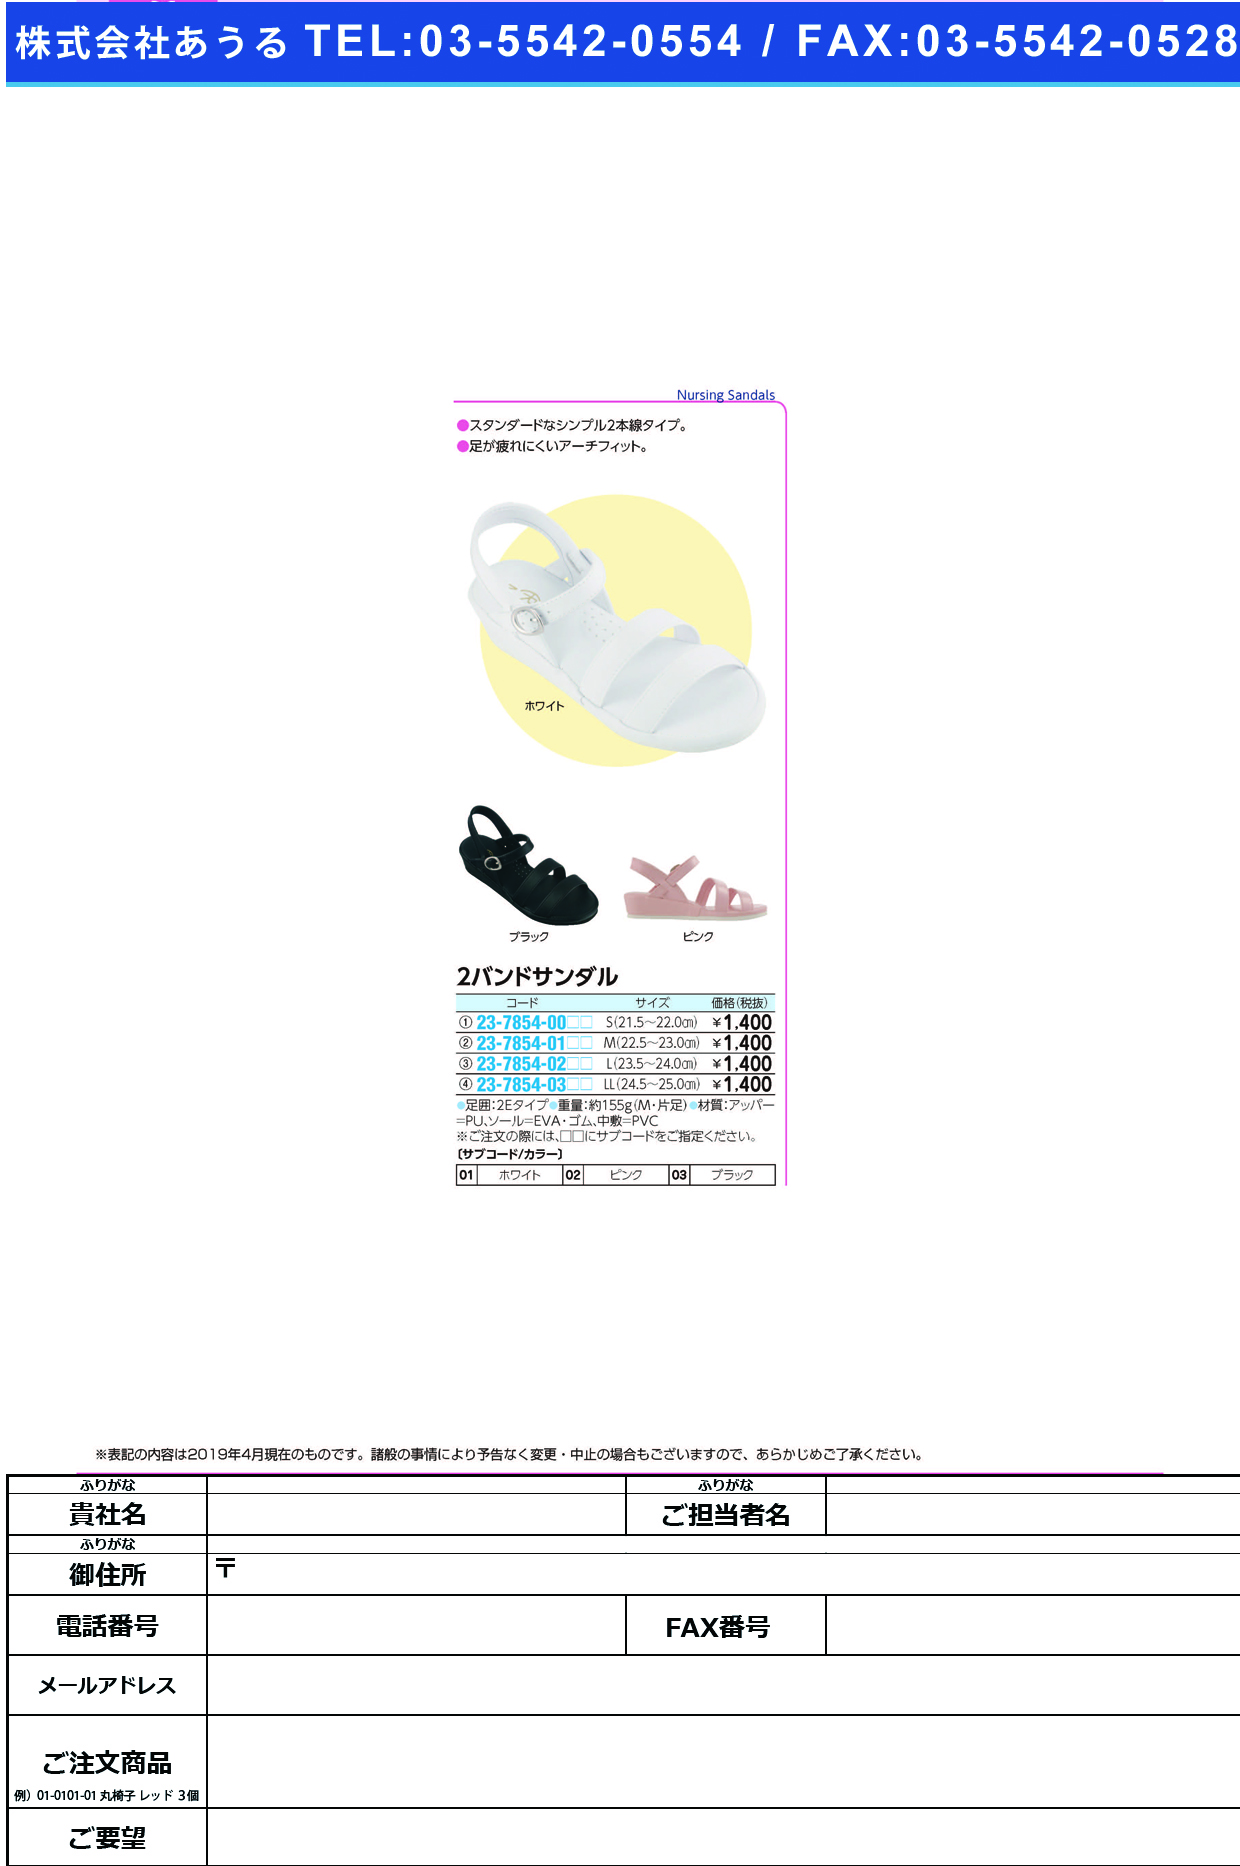 (23-7854-00)２バンドサンダル S(21.5-22.0CM) ﾂｰﾊﾞﾝﾄﾞｻﾝﾀﾞﾙ ブラック(ファーストレイト)【1足単位】【2019年カタログ商品】